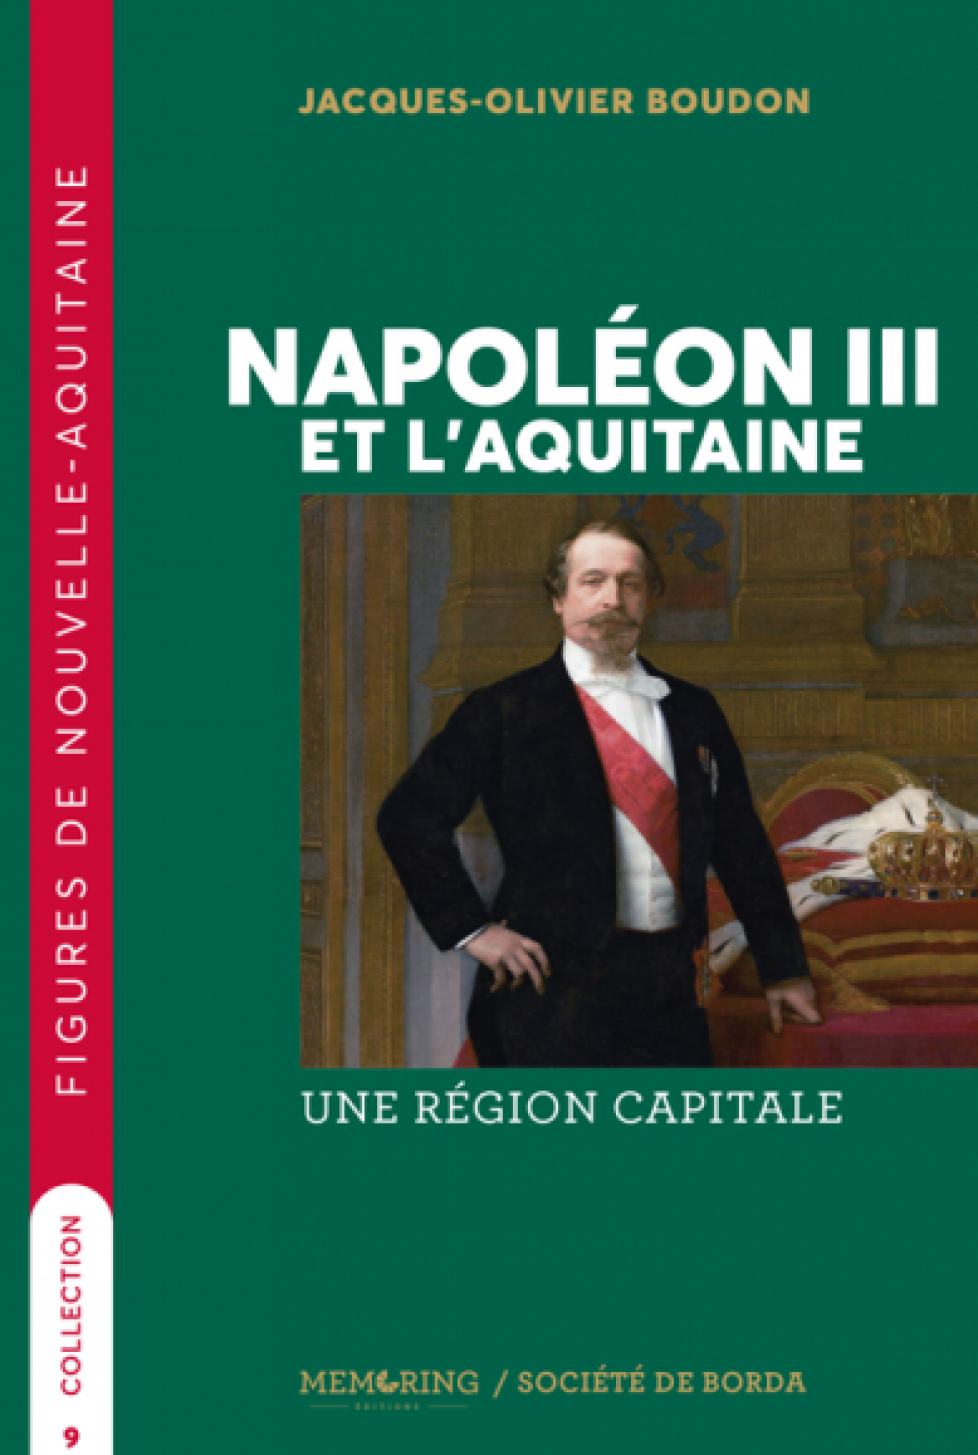 boudon_napoiii_aquitaine-tt-width-389-height-579-crop-1-bgcolor-ffffff-lazyload-0